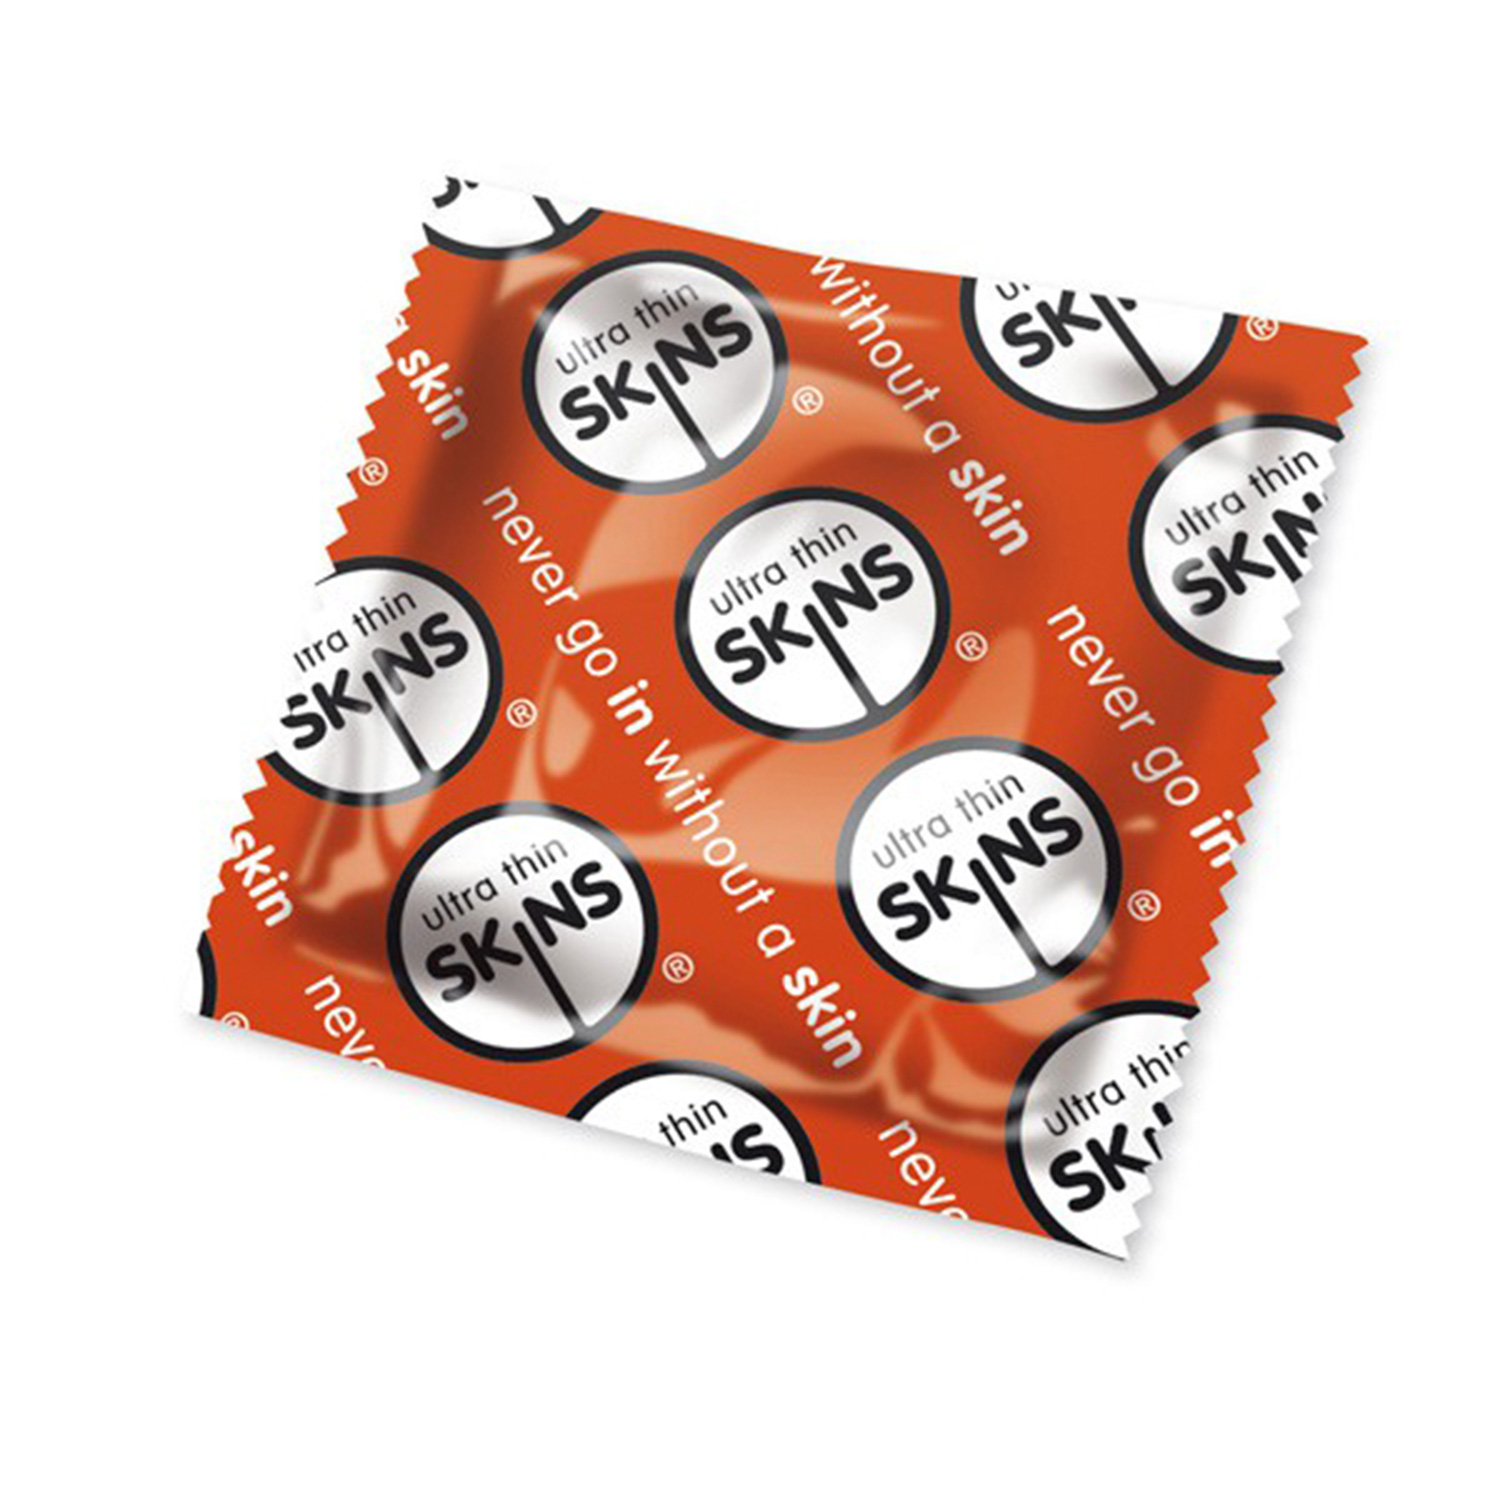 Skins Ultratunna Kondomer 500 st - Klar | Tillbehör//Kondomer//Män//Bättre Sex//Par kondomer//Vanliga Kondomer//Små Kondomer//Tunna Kondomer//Skins | Intimast